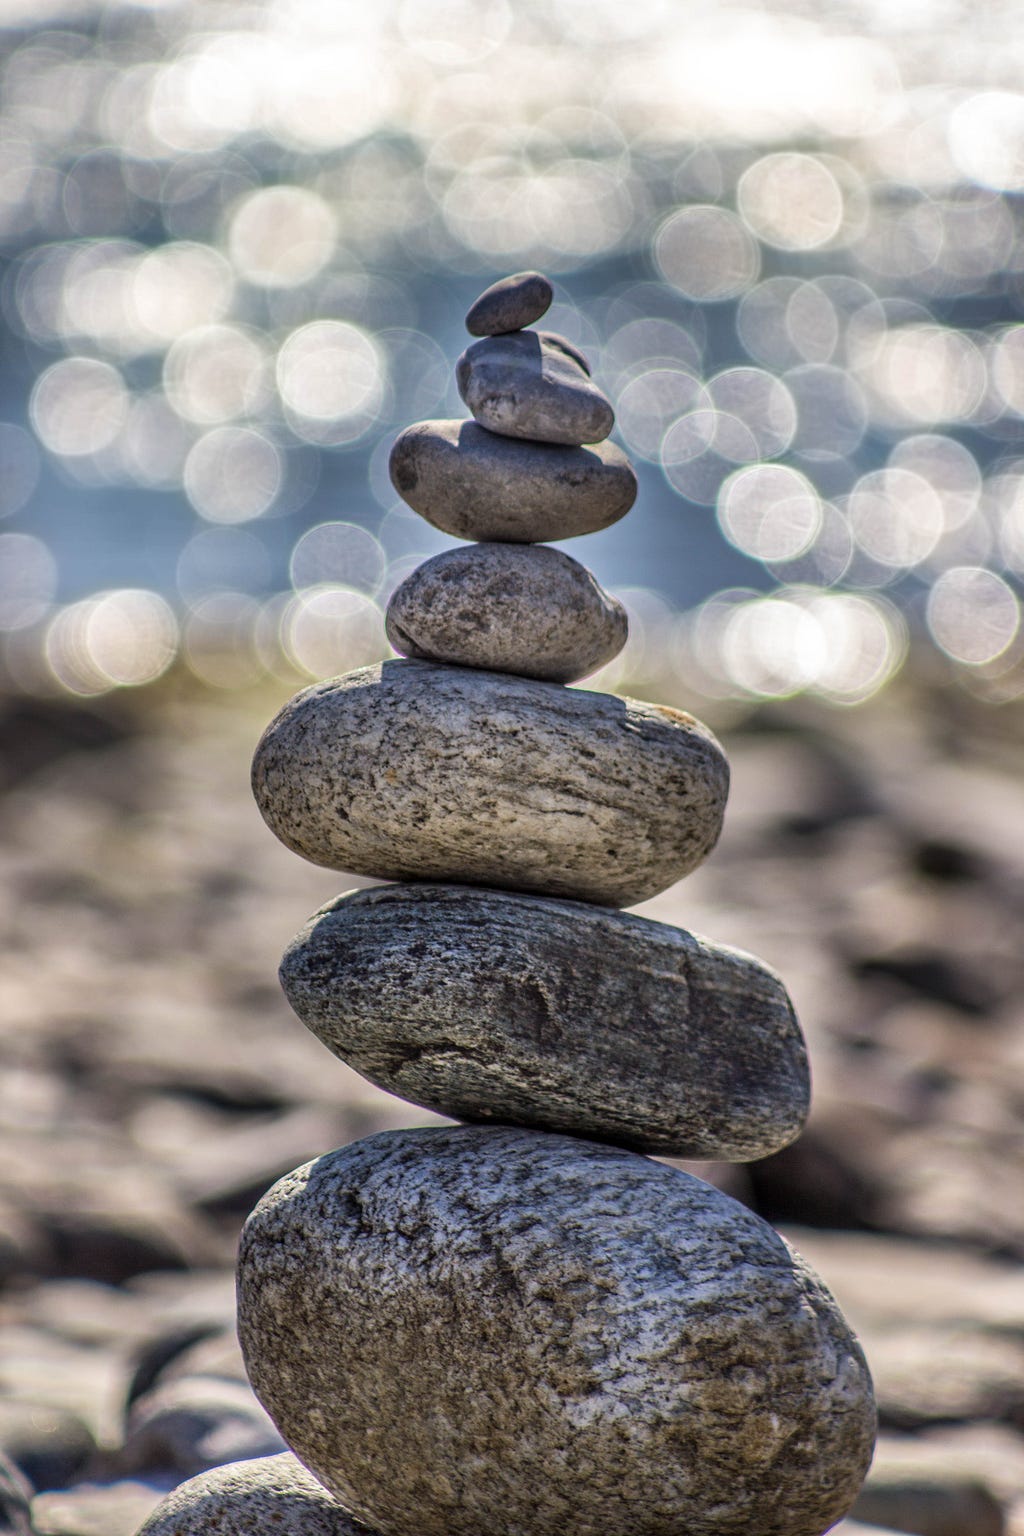 para ilustrar a prática de meditação: uma imagem com pedras de diferentes tamanhos empilhadas, simbolizando equilíbrio